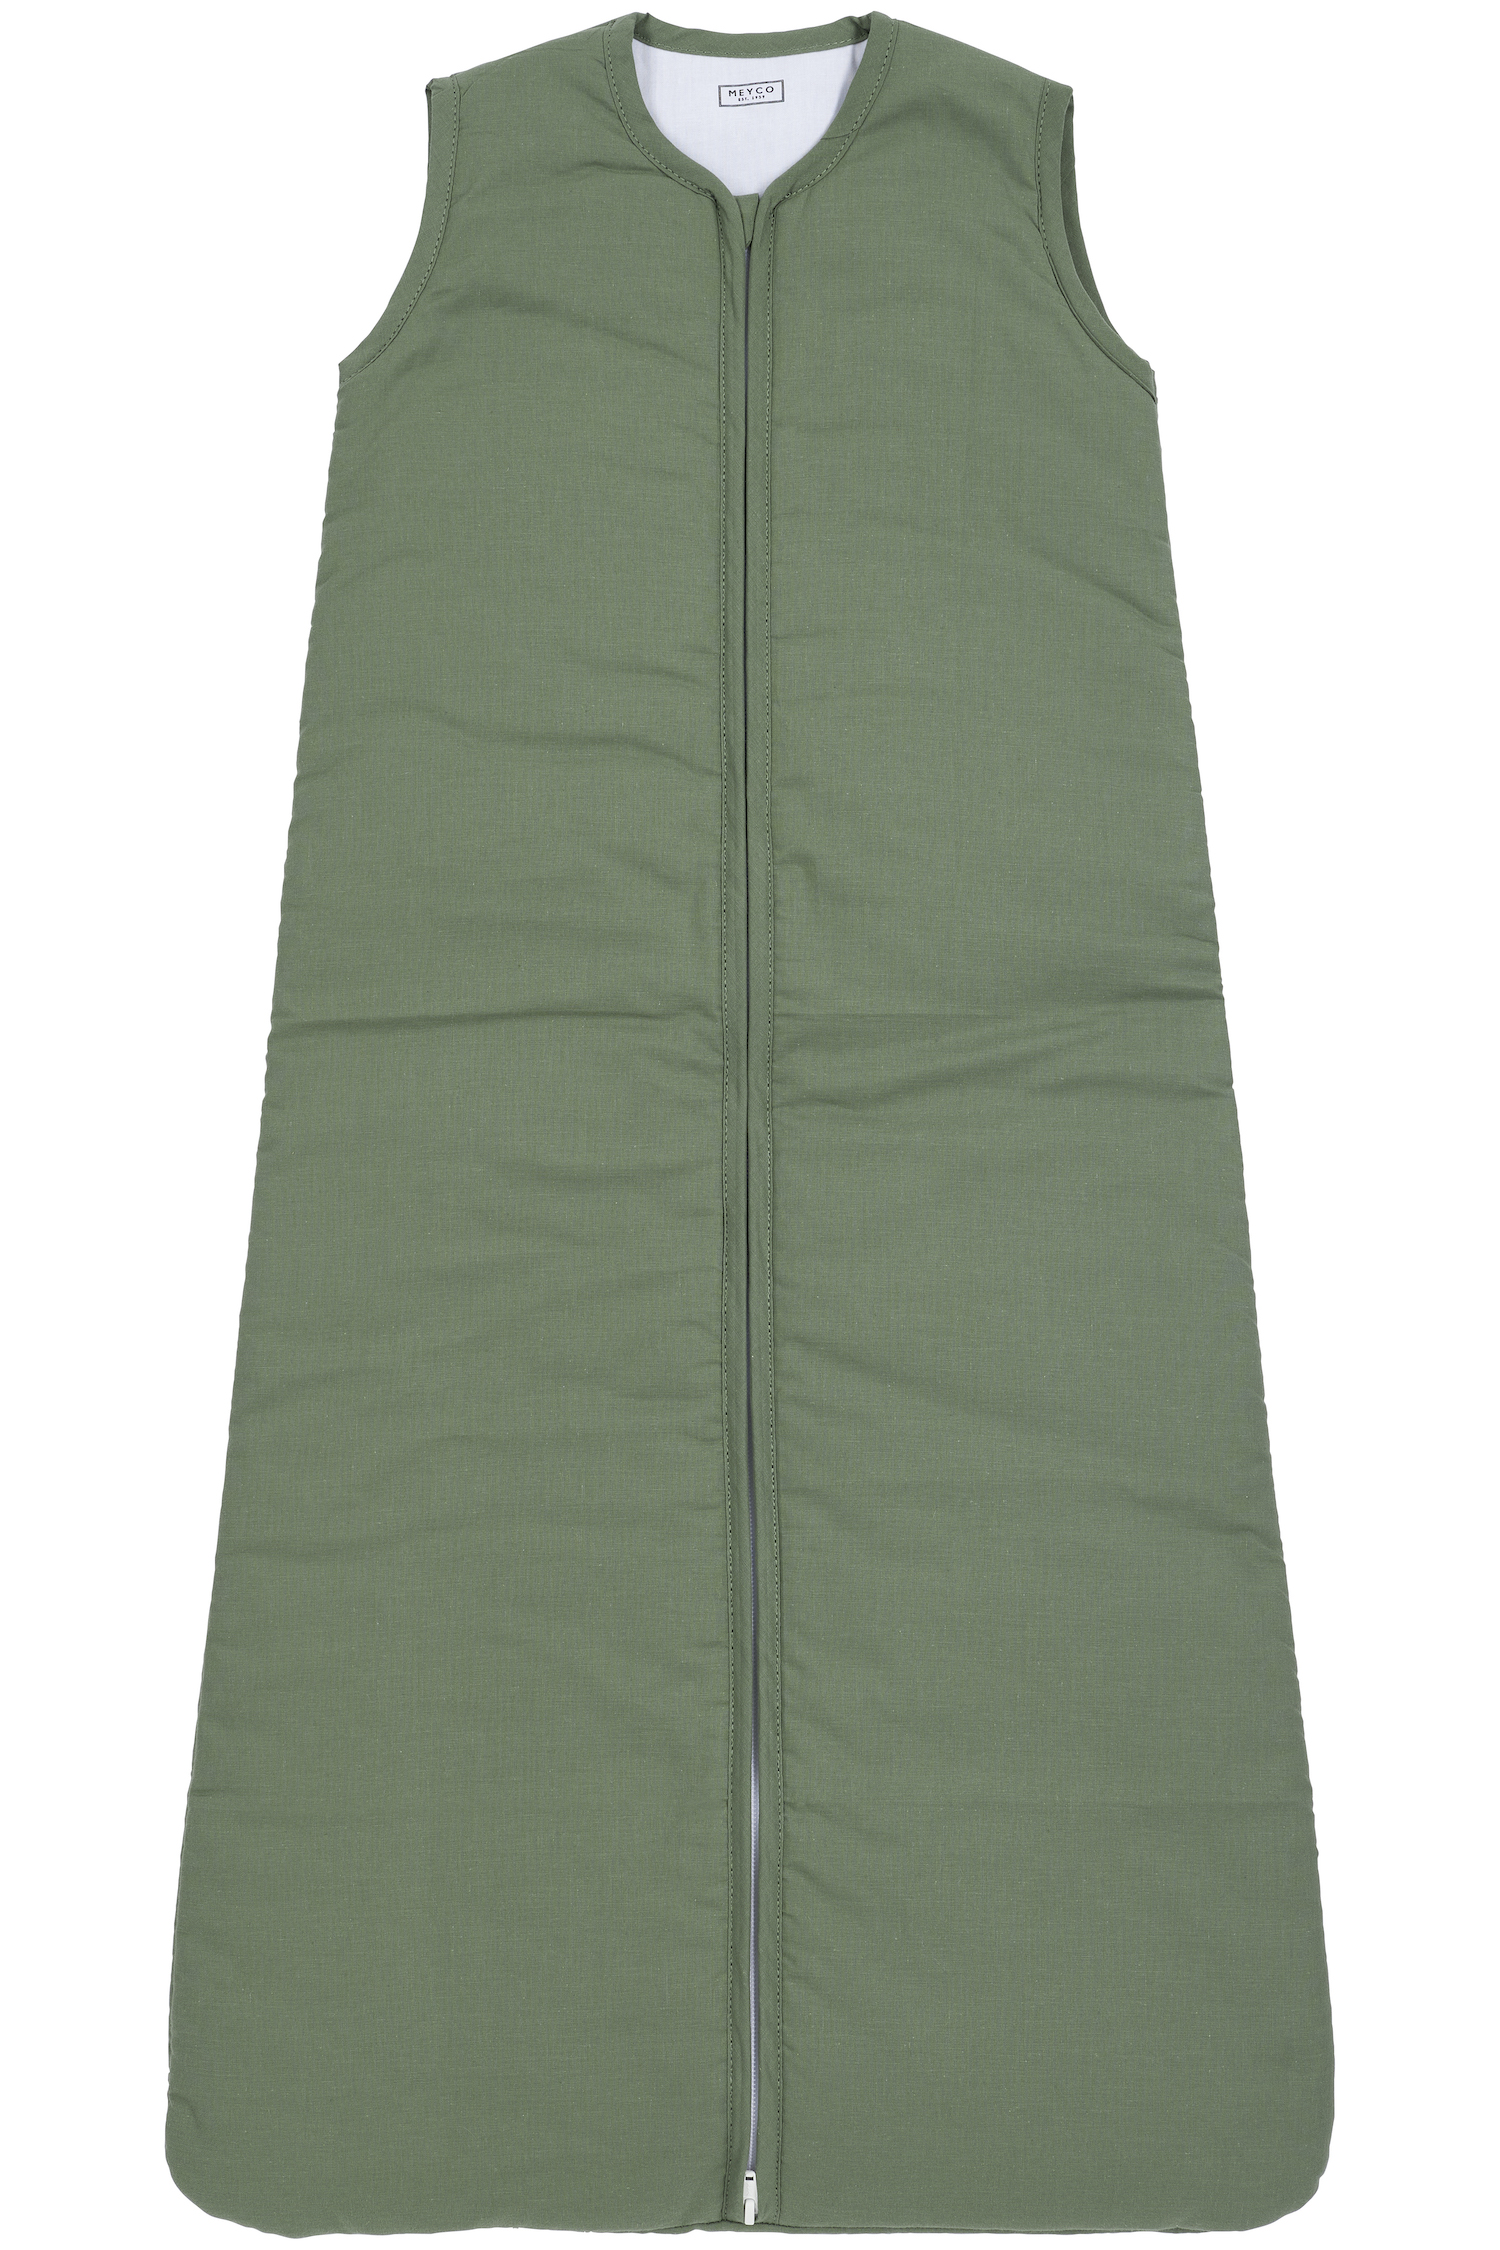 Schlafsack Gefüttert Uni - forest green - 90cm